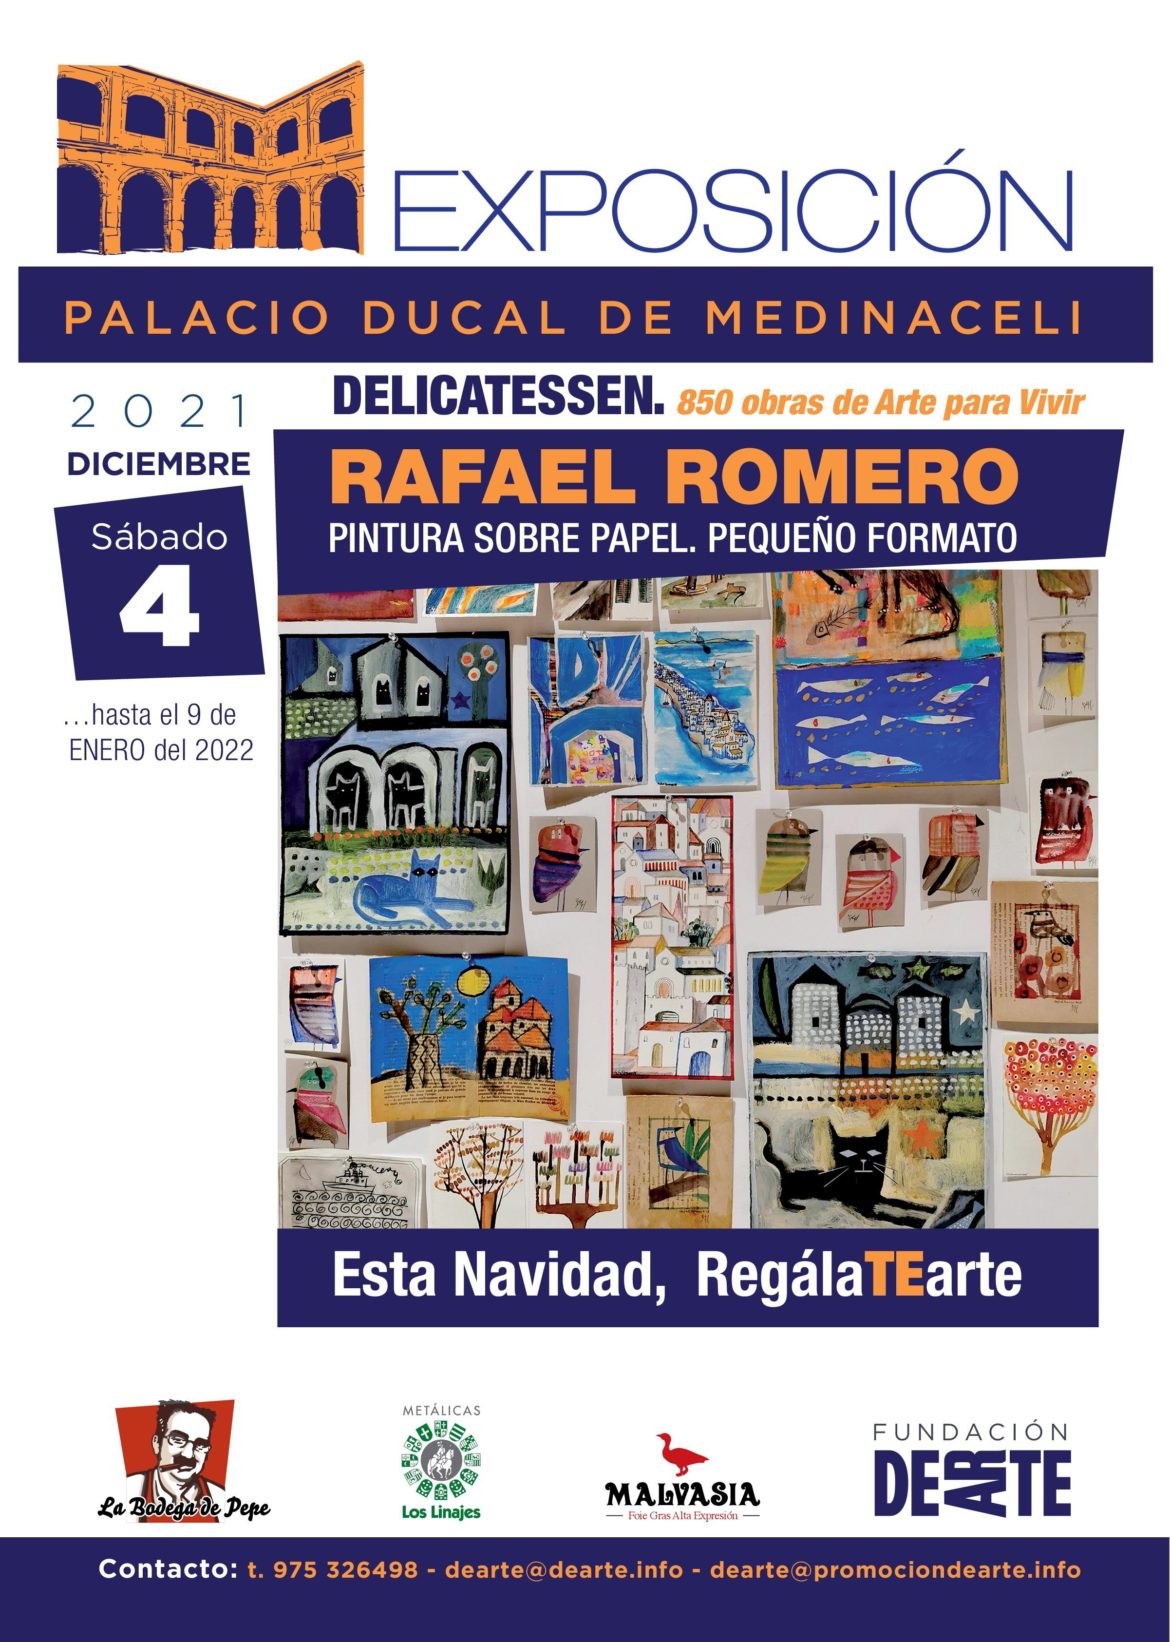 Rafael Romero – Pintura sobre papel